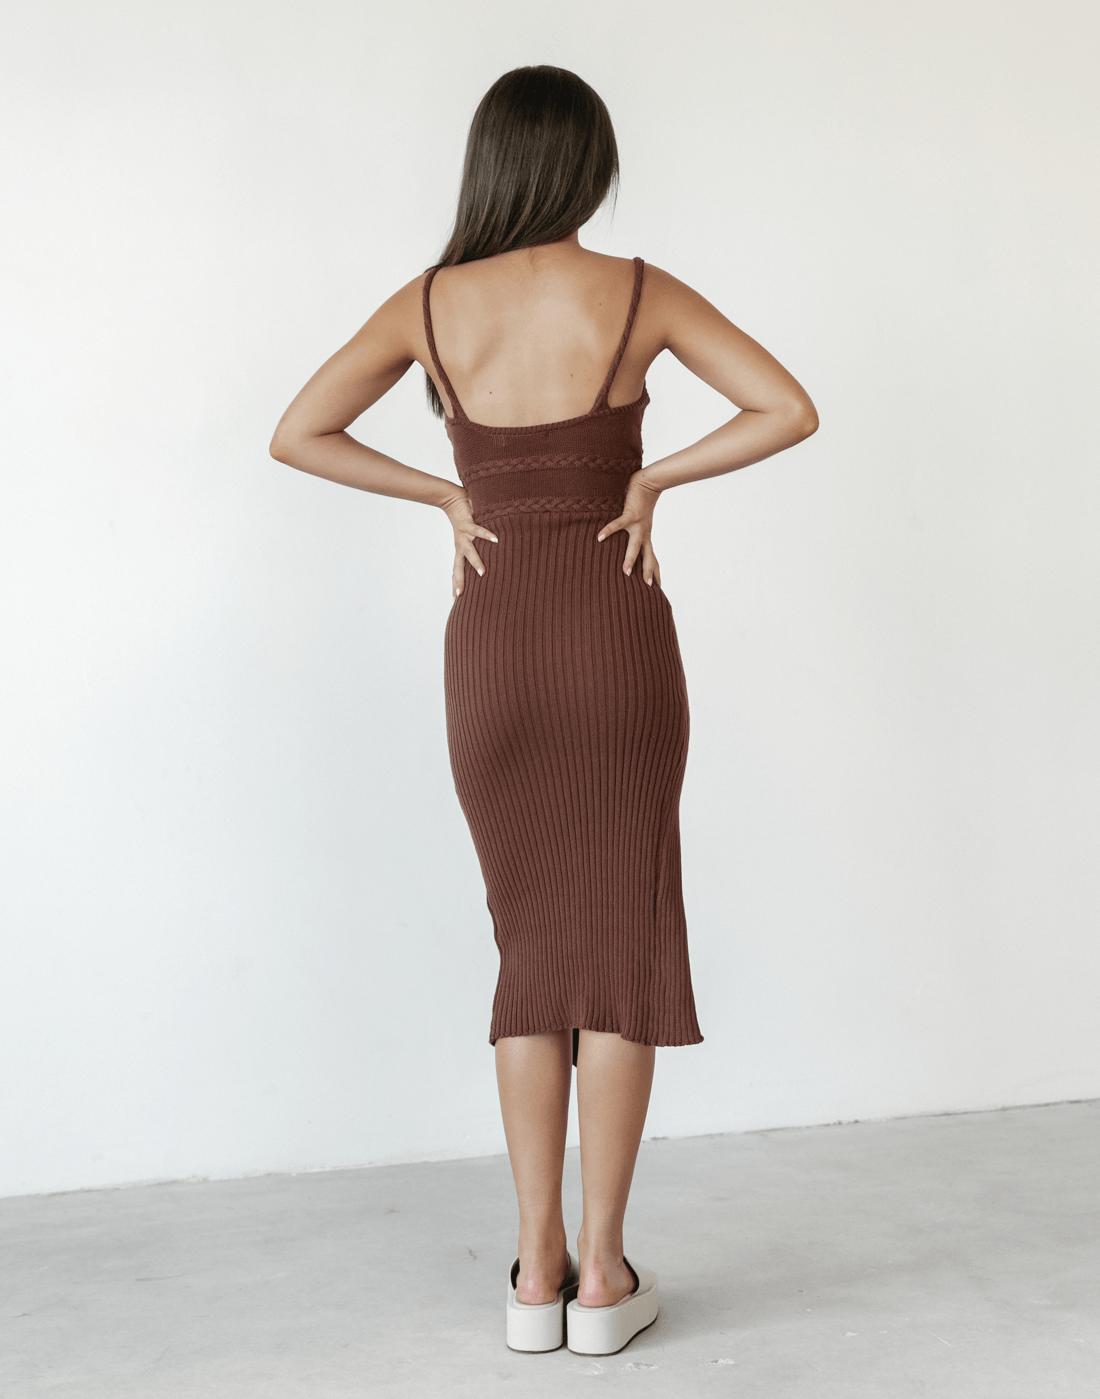 Cameron Knit Midi Dress (Brown) - Spagetthi Strap Knit Dress - Women's Dress - Charcoal Clothing